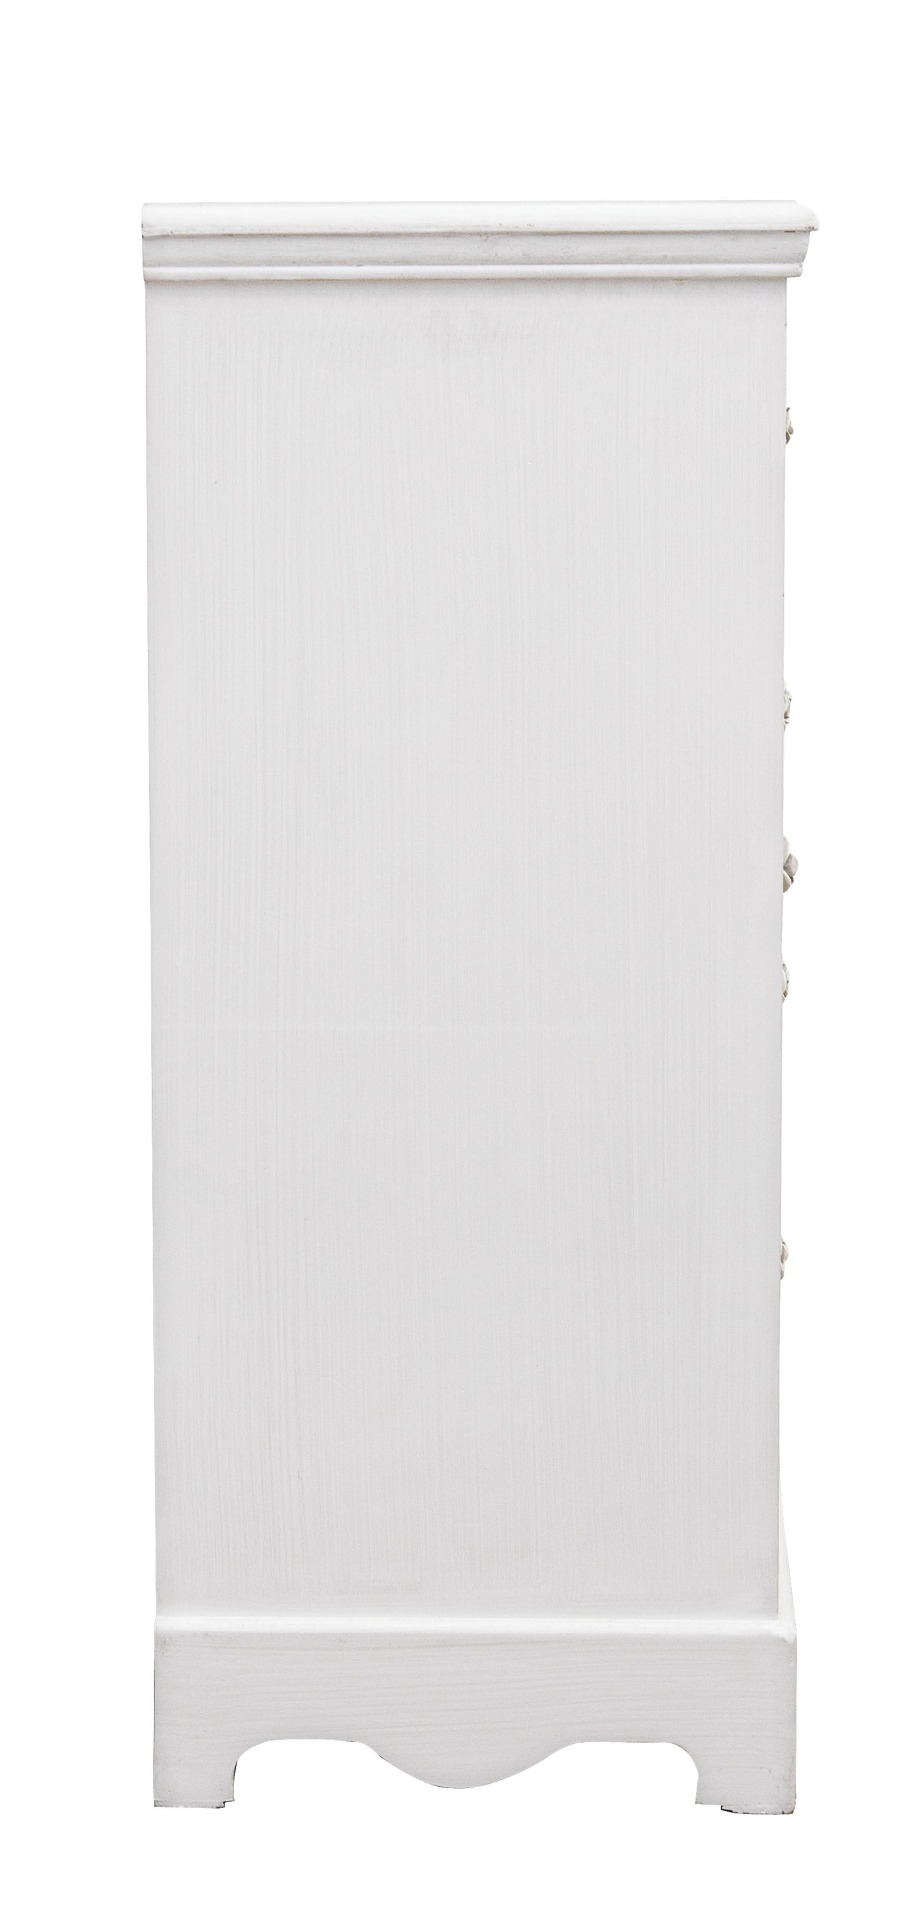 Die Kommode Blanc überzeugt mit ihrem klassischen Design. Gefertigt wurde sie aus MDF, welches einen weißen Farbton besitzt. Das Gestell ist auch aus MDF. Die Kommode verfügt über eine Tür und vier Schubladen. Die Breite beträgt 66 cm.